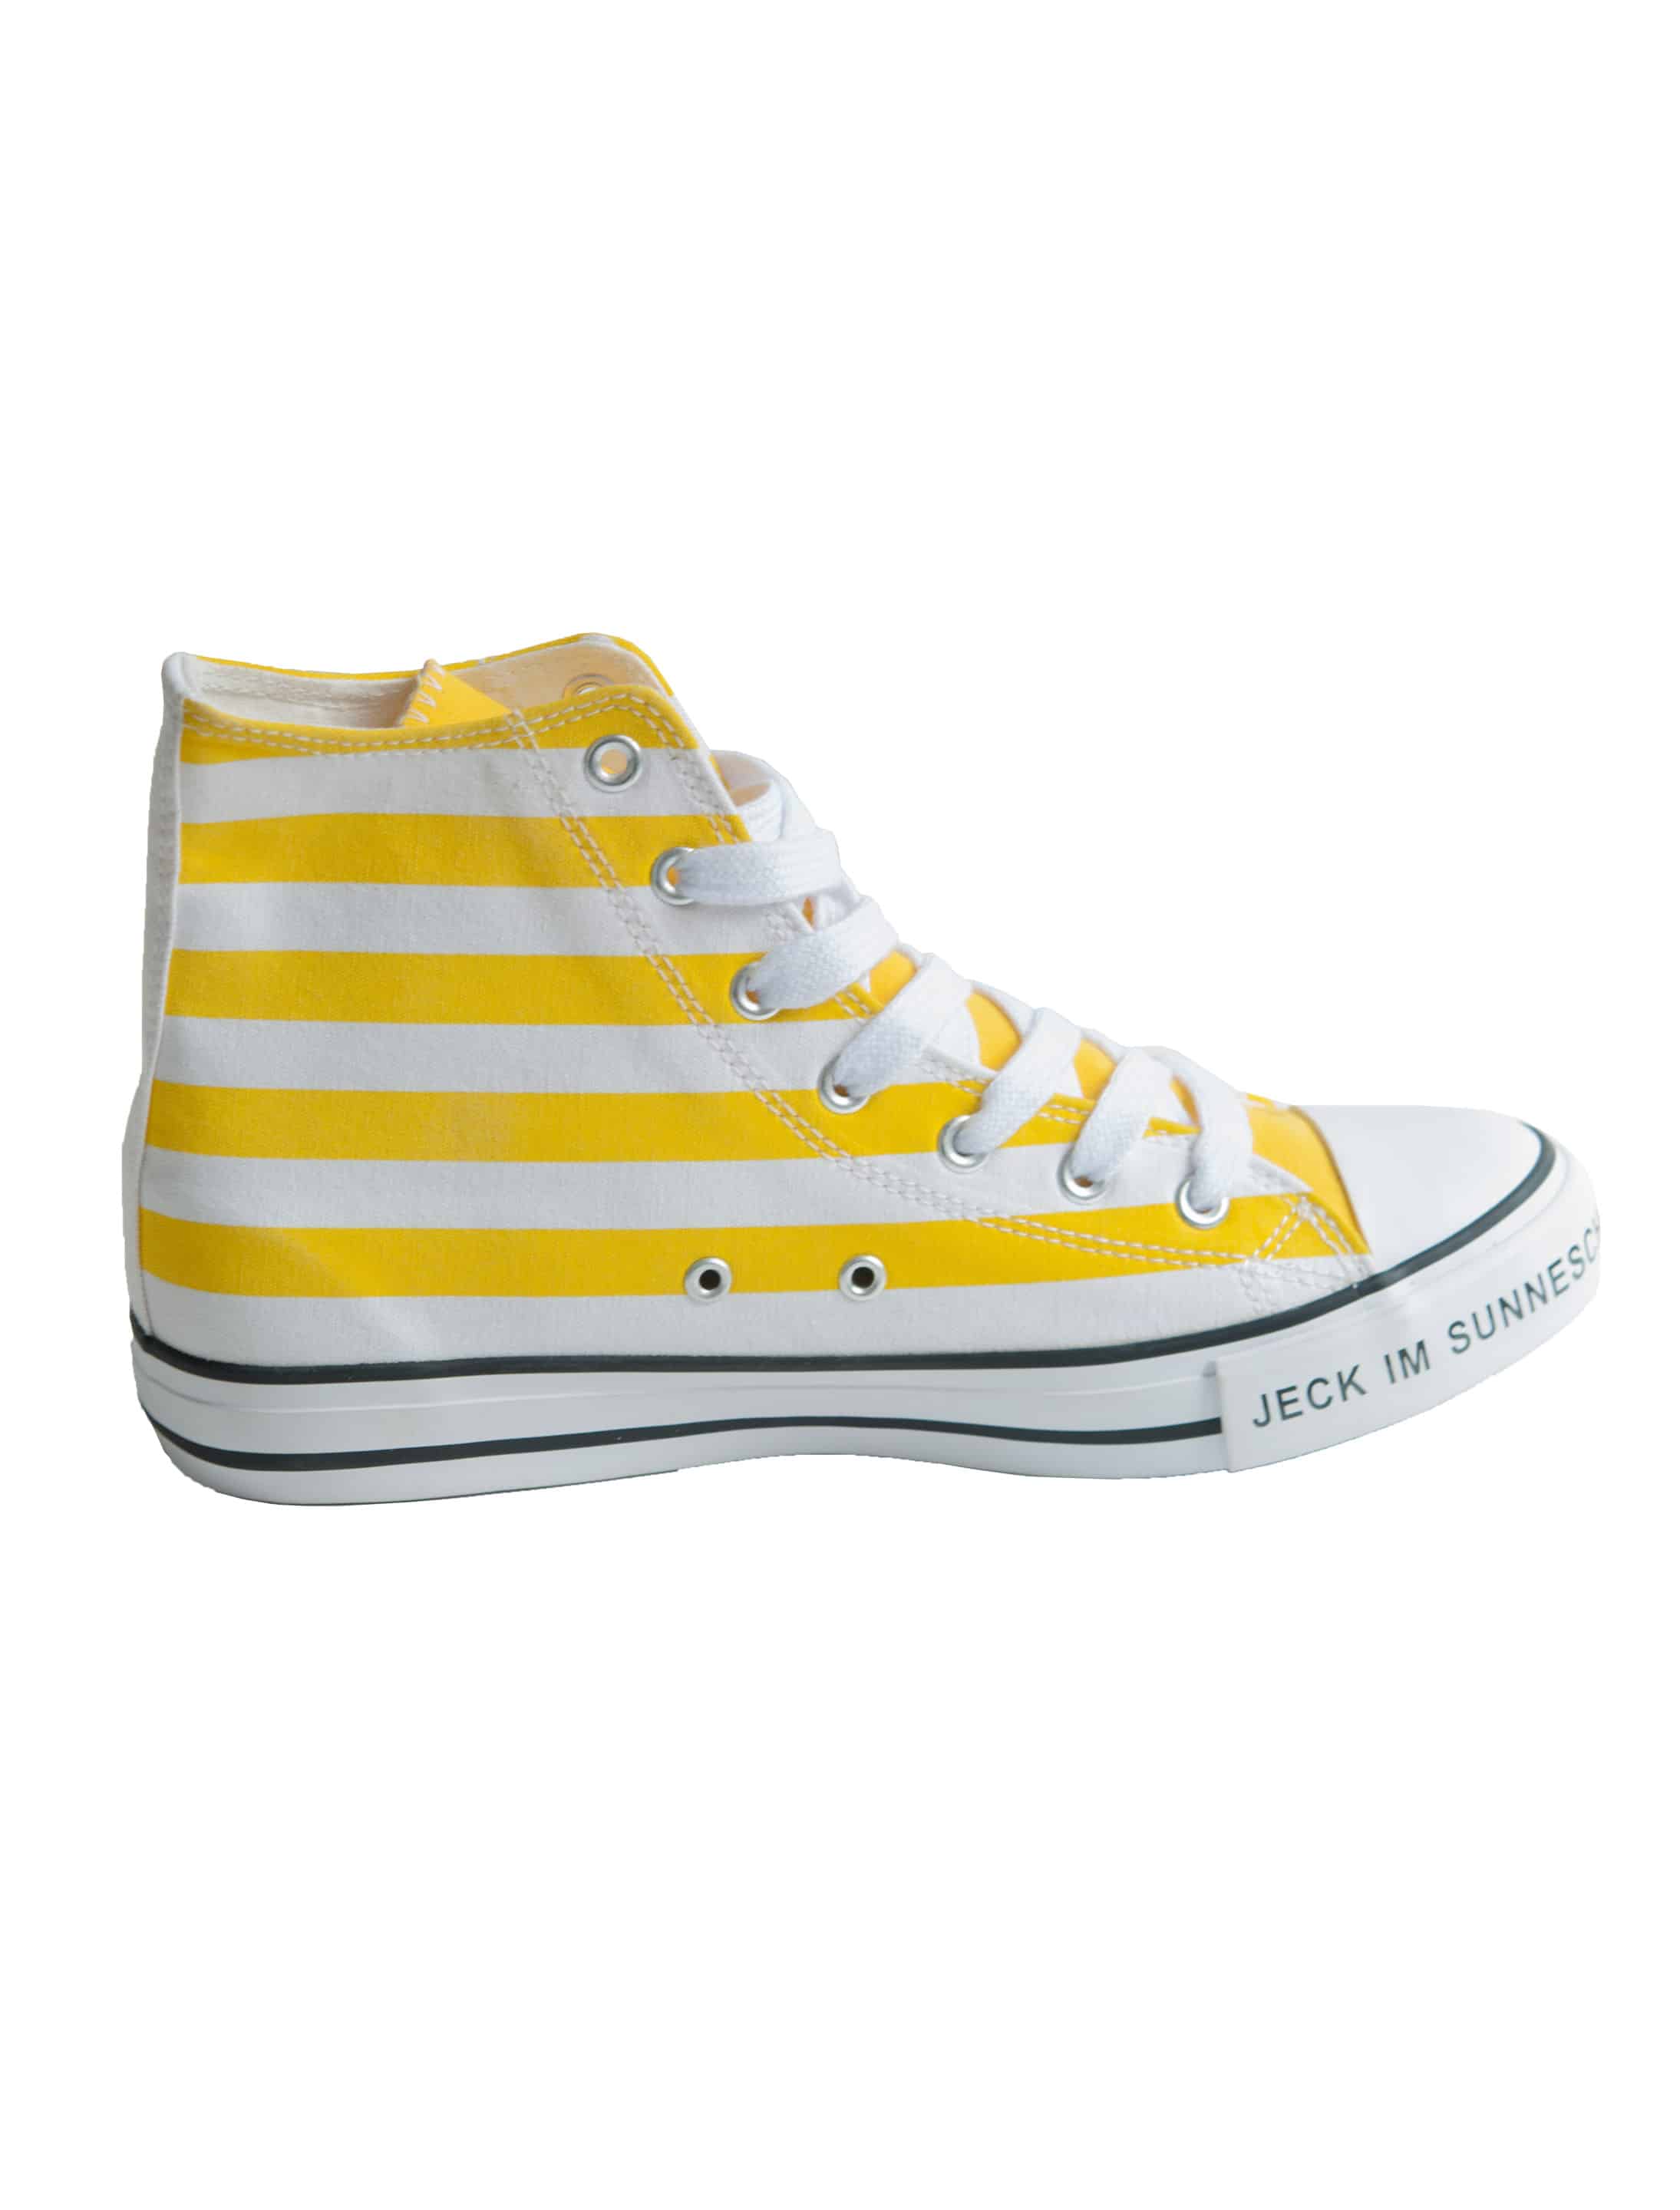 Schuhe Jeck im Sunnesching gelb 42